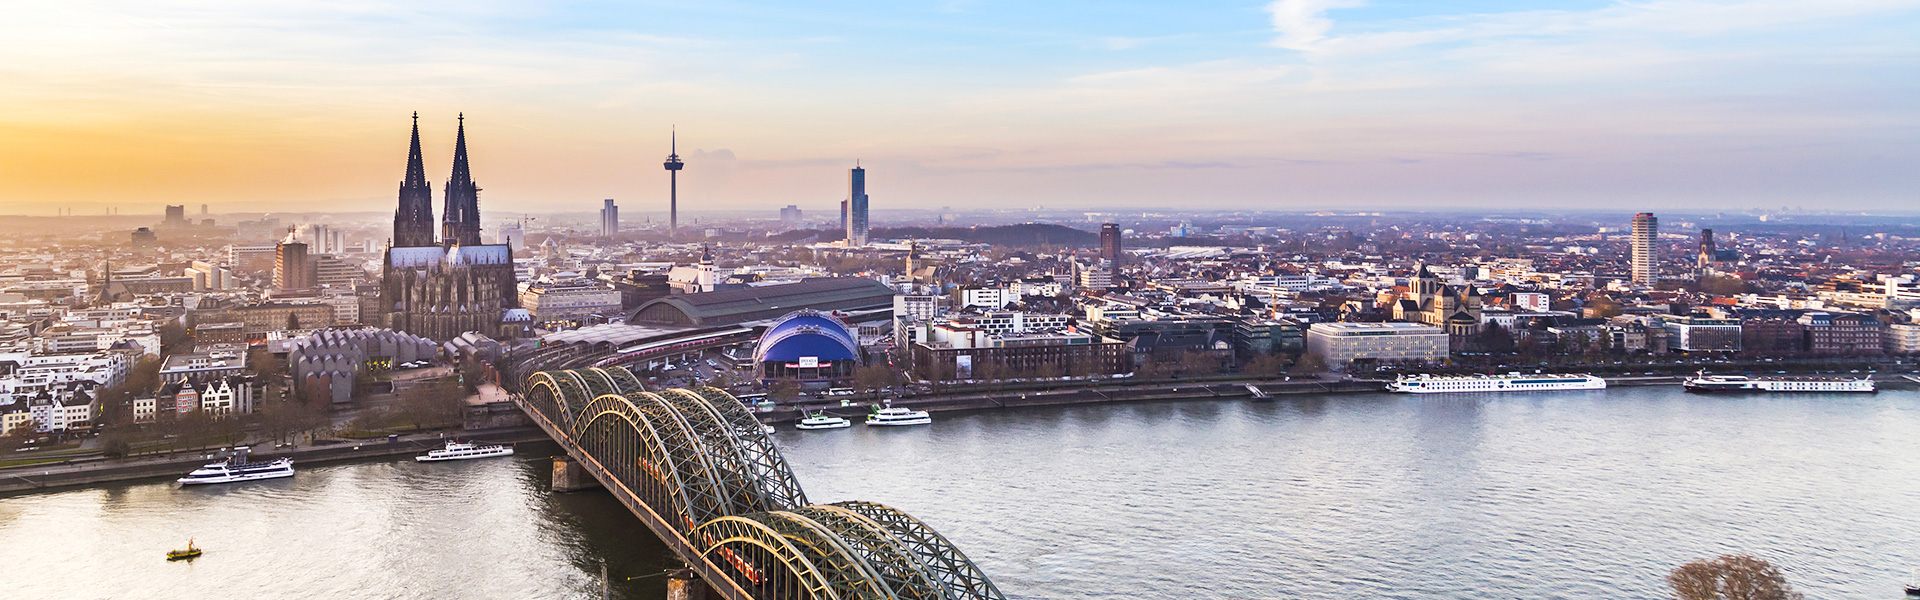 Die schönsten Städtereisen im Winter Köln